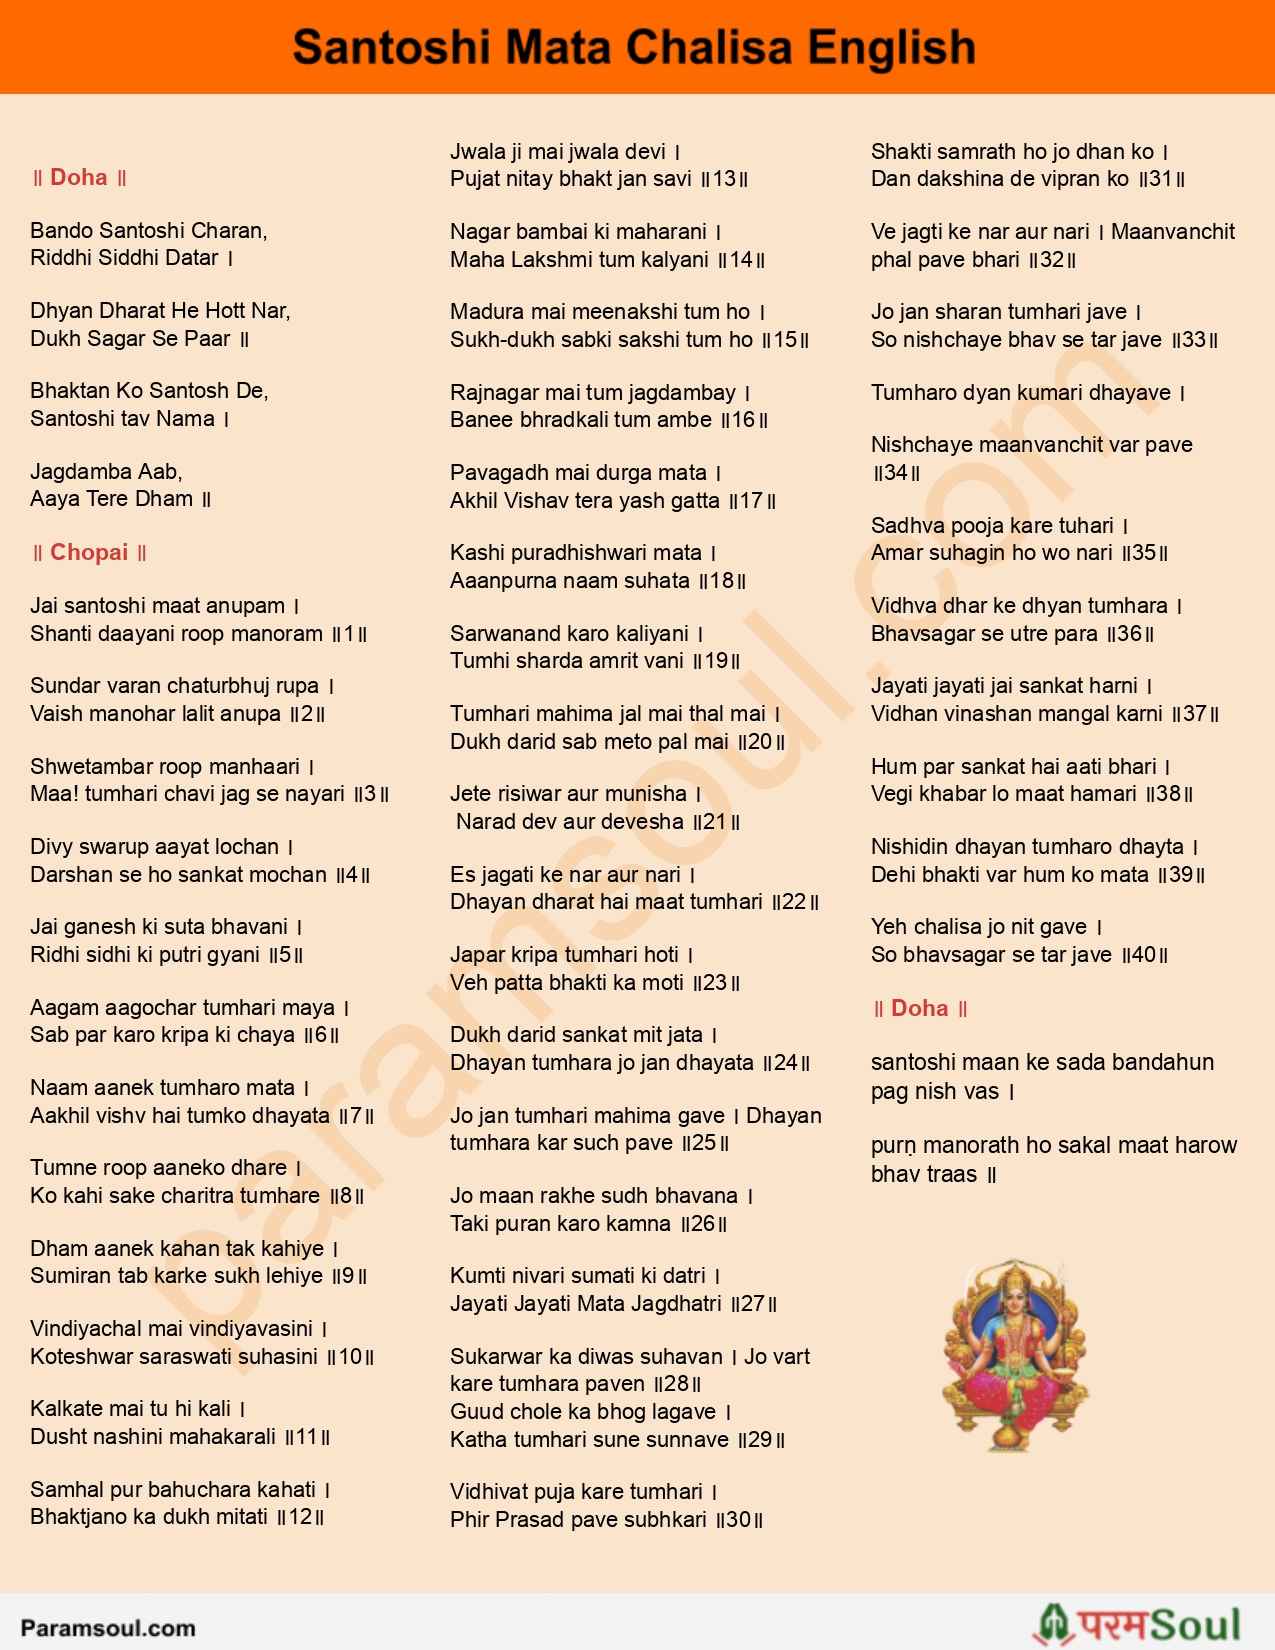 Santoshi Chalisa Lyrics in English